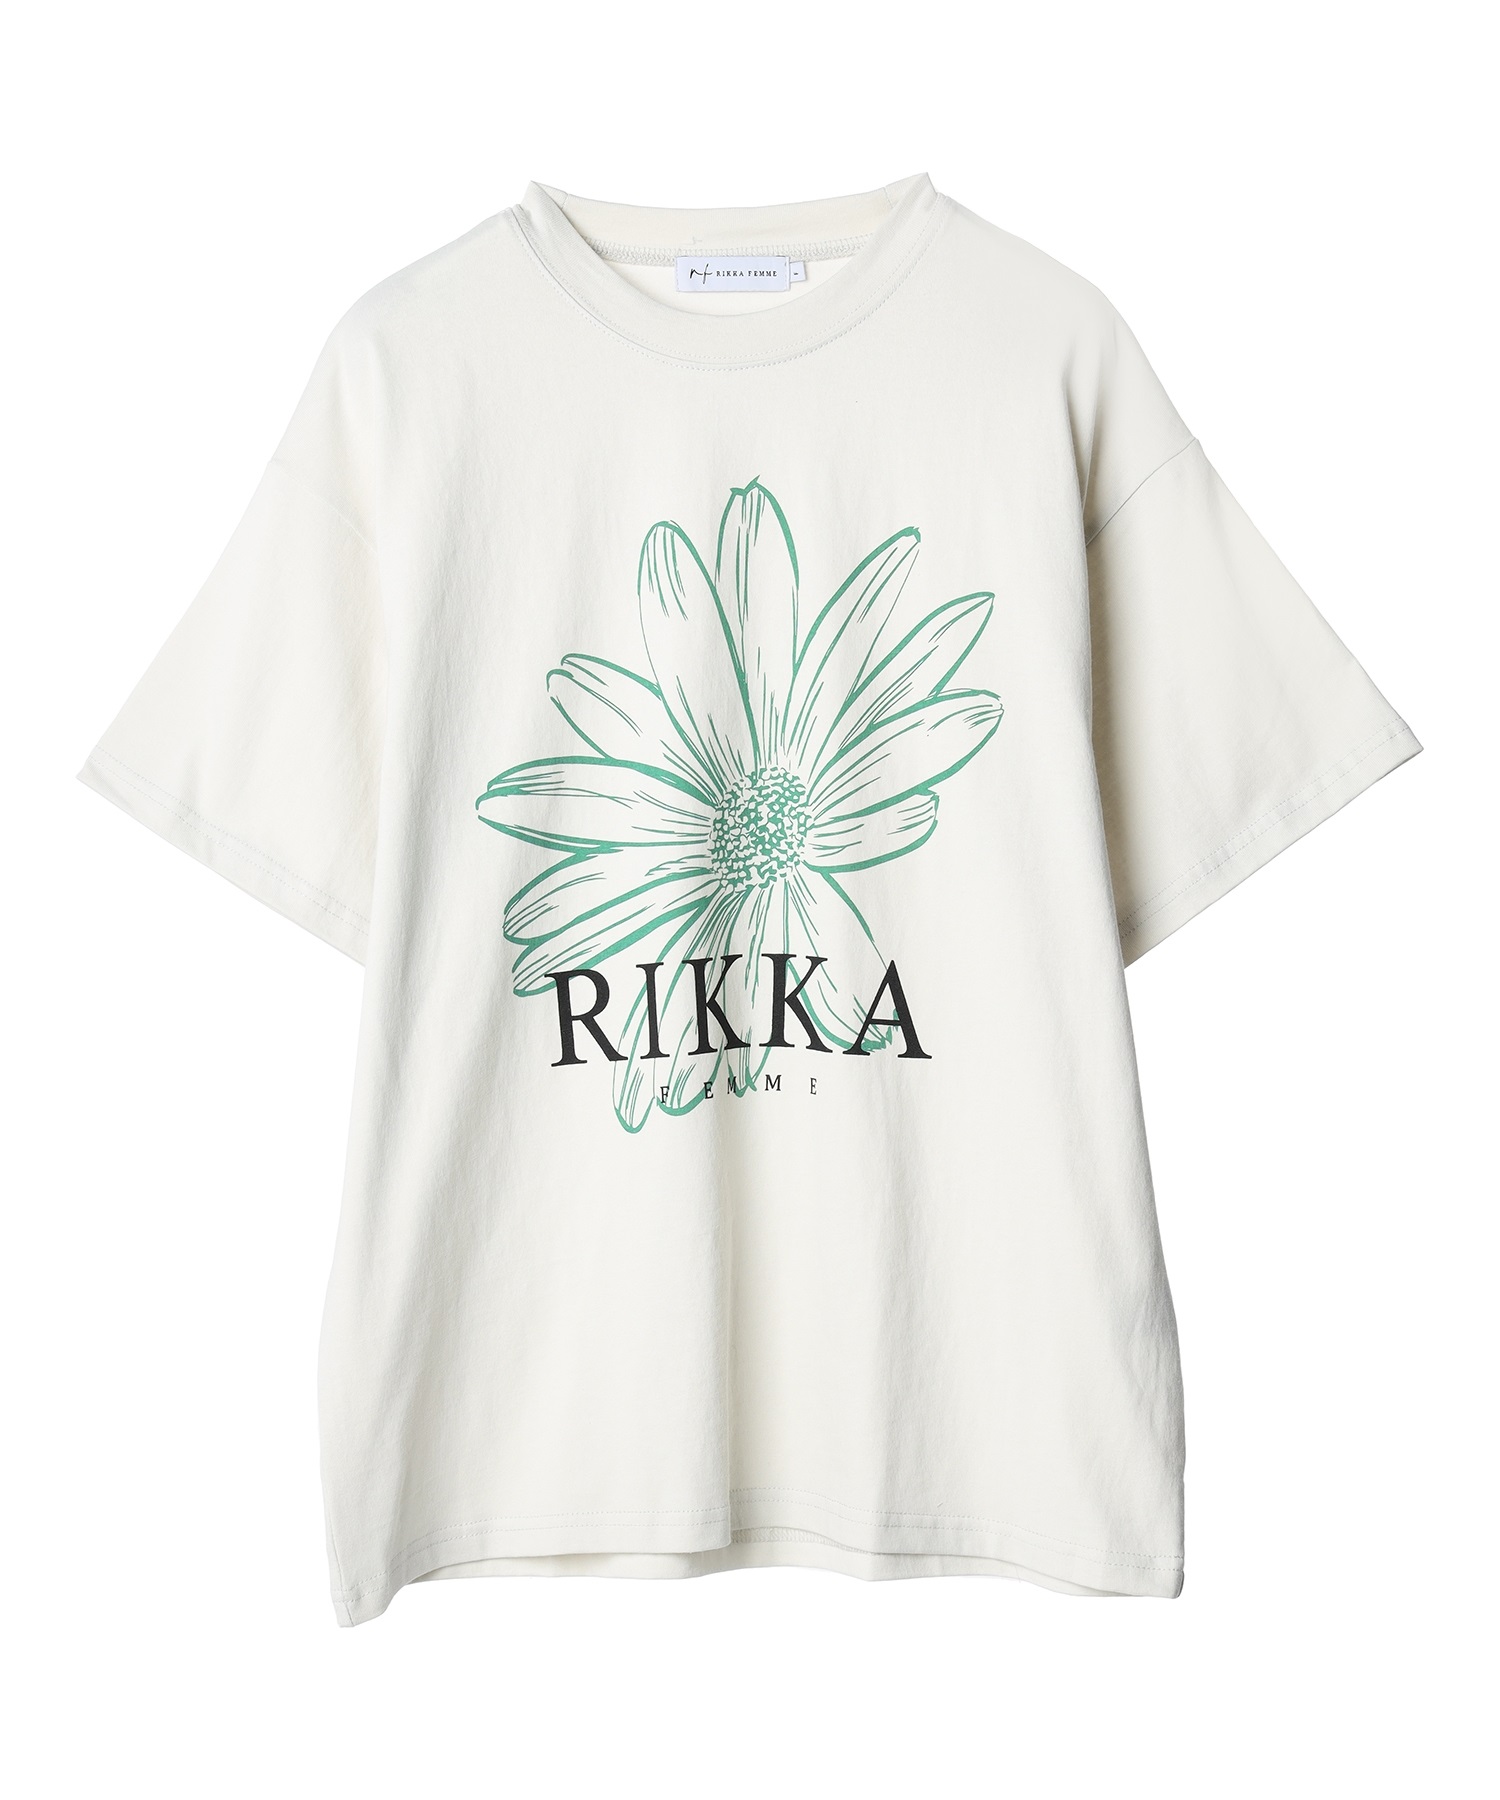 【マトメガイ対象】RIKKA FEMME リッカファム DESI RF24SS100 レディース 半袖Tシャツ(LBG-F)